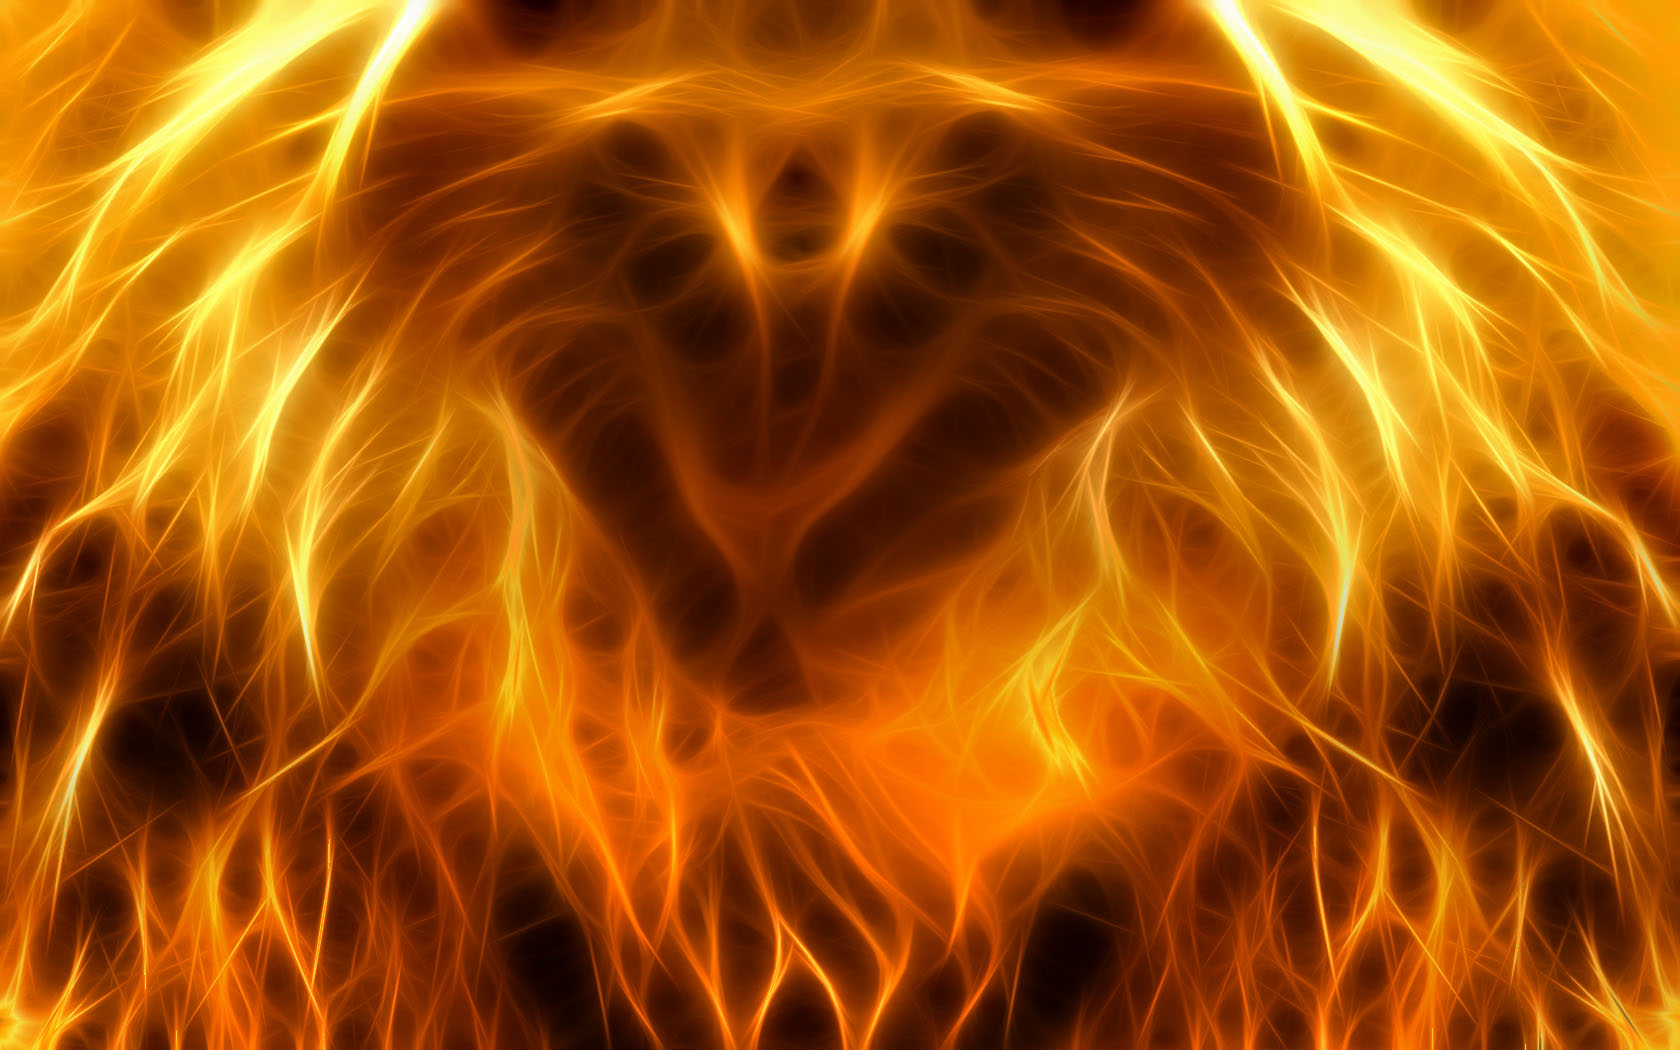 Fond d'ecran Lion en flammes